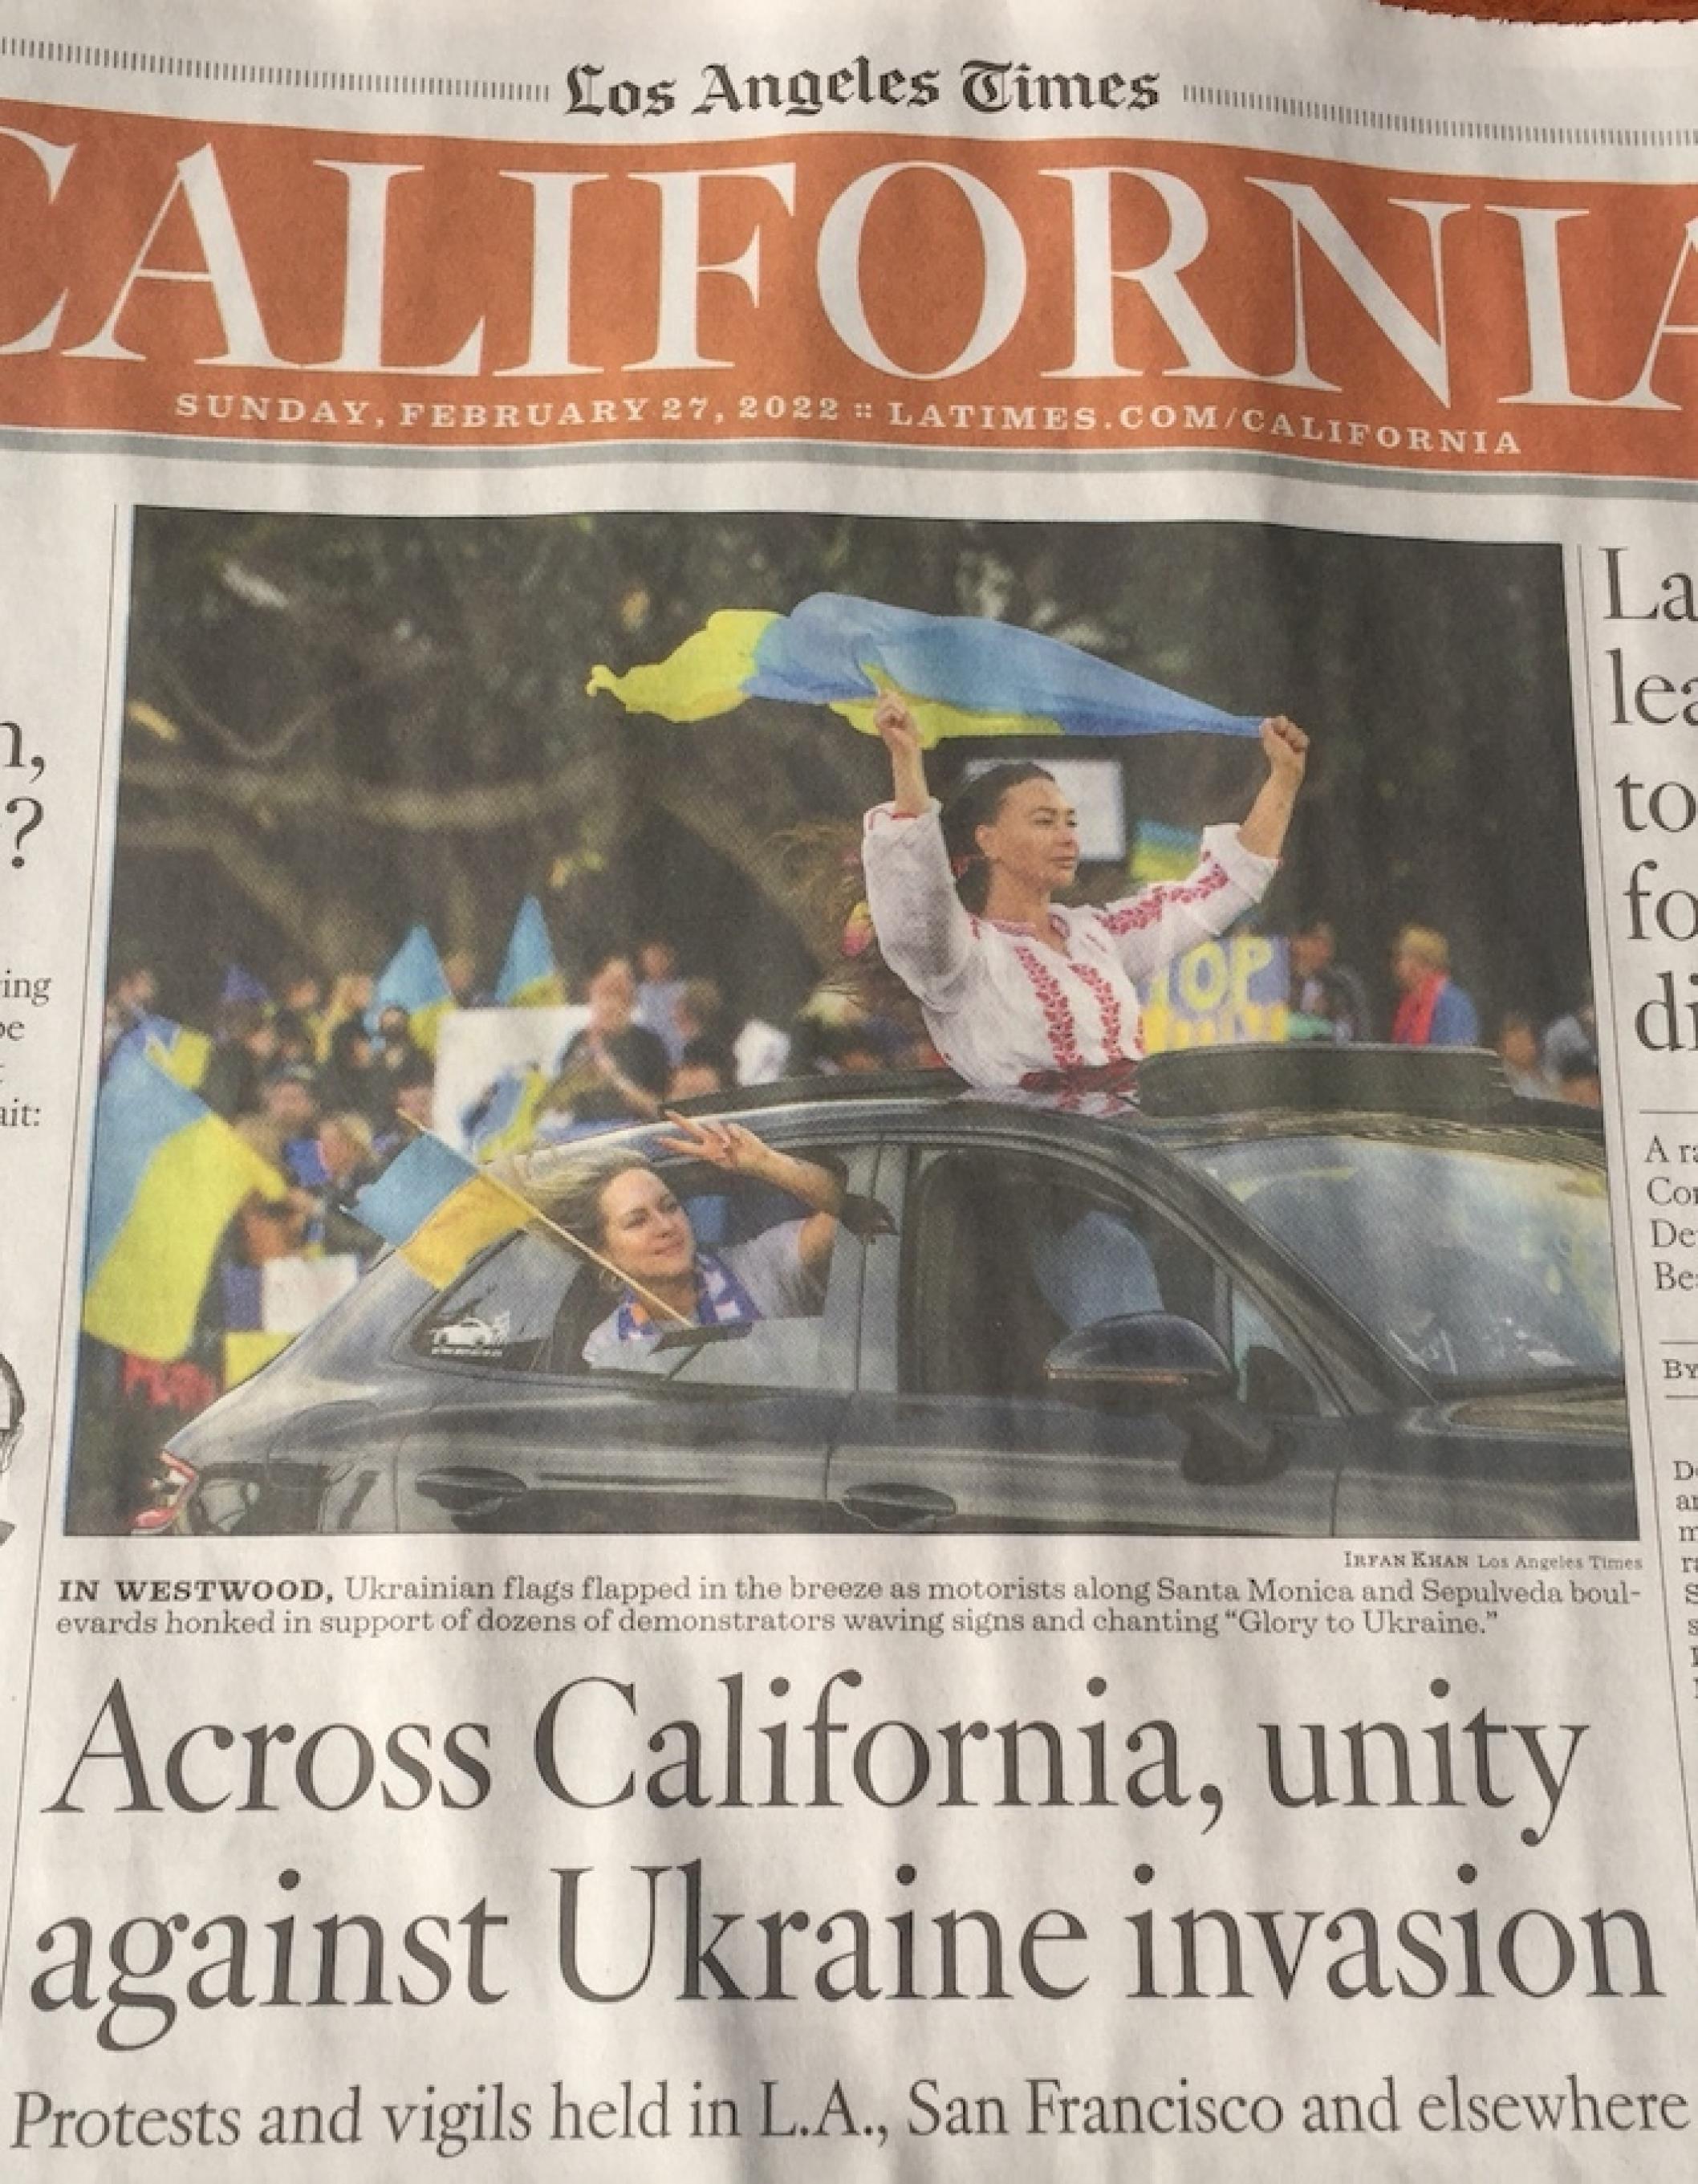 Die Zeitung Los Angeles Times titelt mit dem Satz, dass man quer durch Kalifornien gemeinsam gegen die Invasion sei.